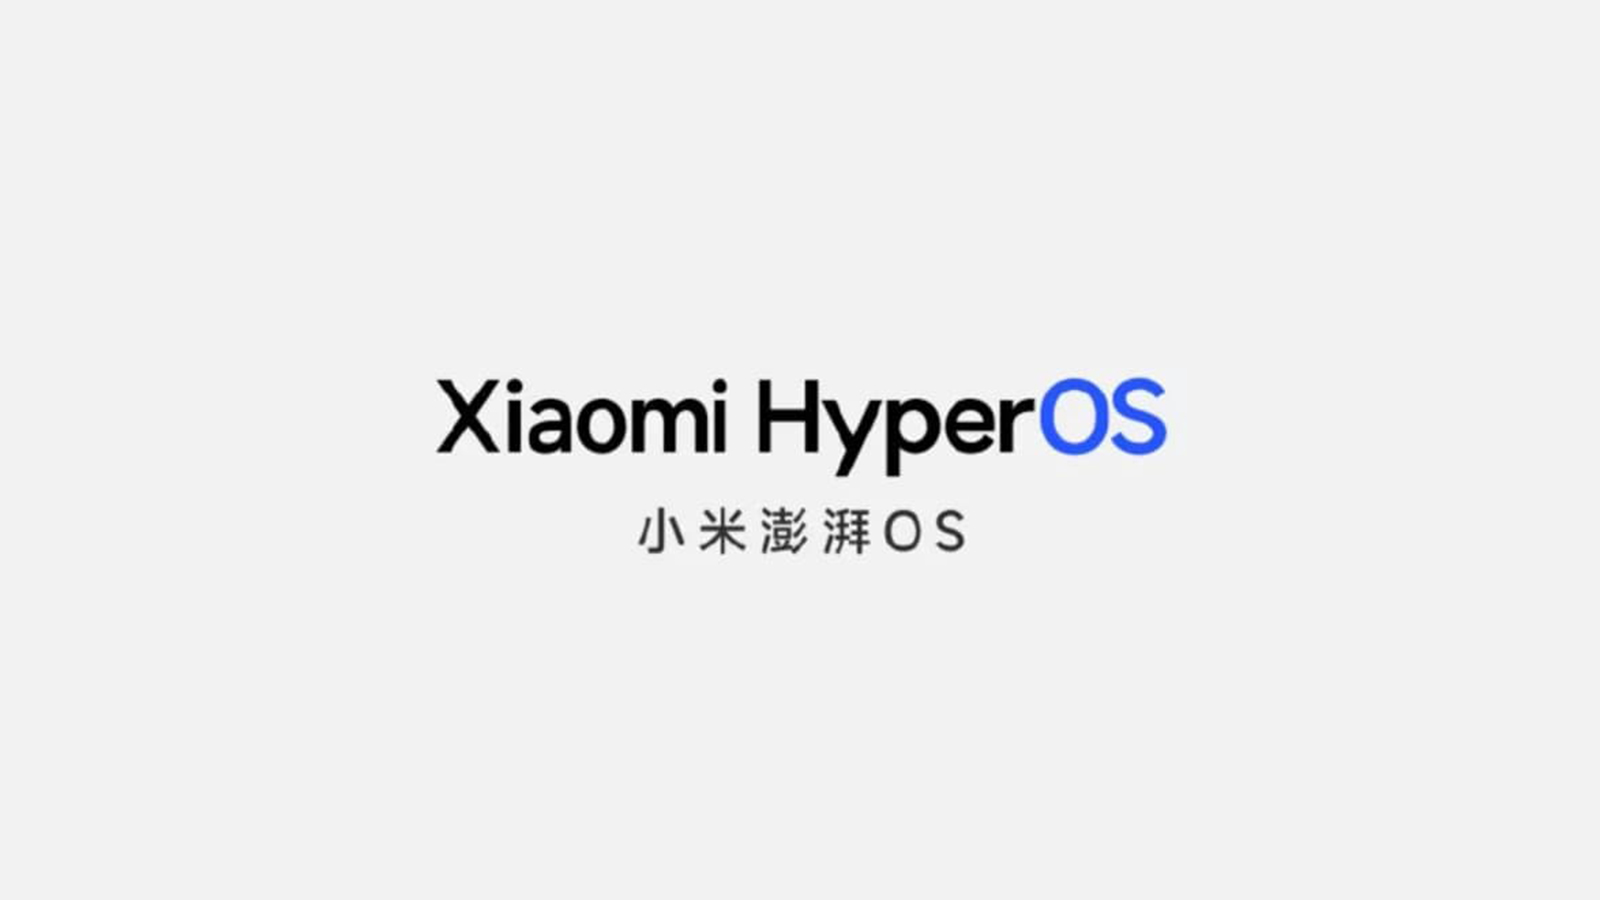 شیائومی HyperOS را معرفی کرد؛ لیست گوشی هایی که هاپیر او اس دریافت می‌کنند